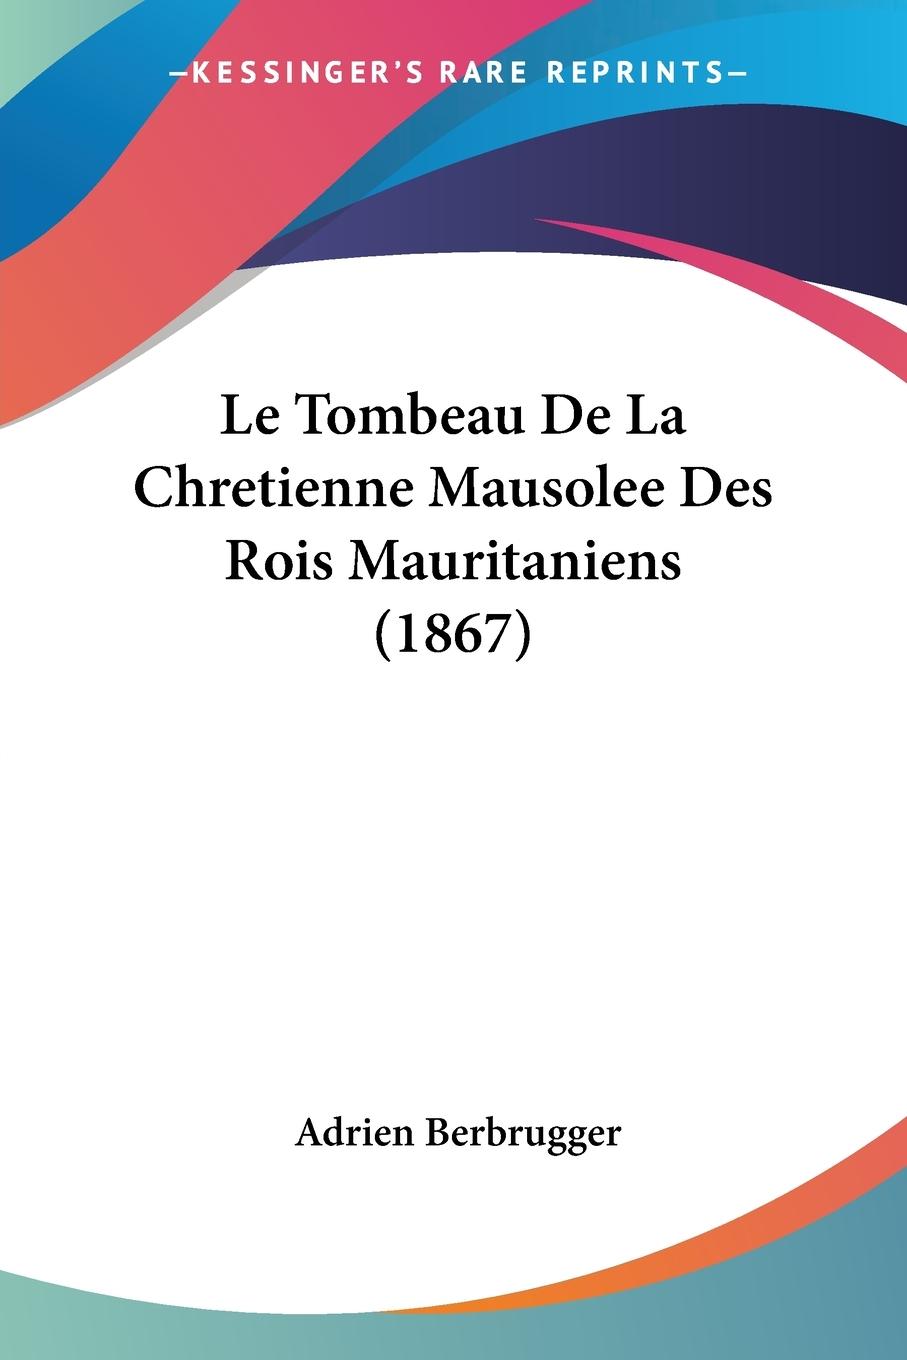 Le Tombeau De La Chretienne Mausolee Des Rois Mauritaniens (1867) - Berbrugger, Adrien